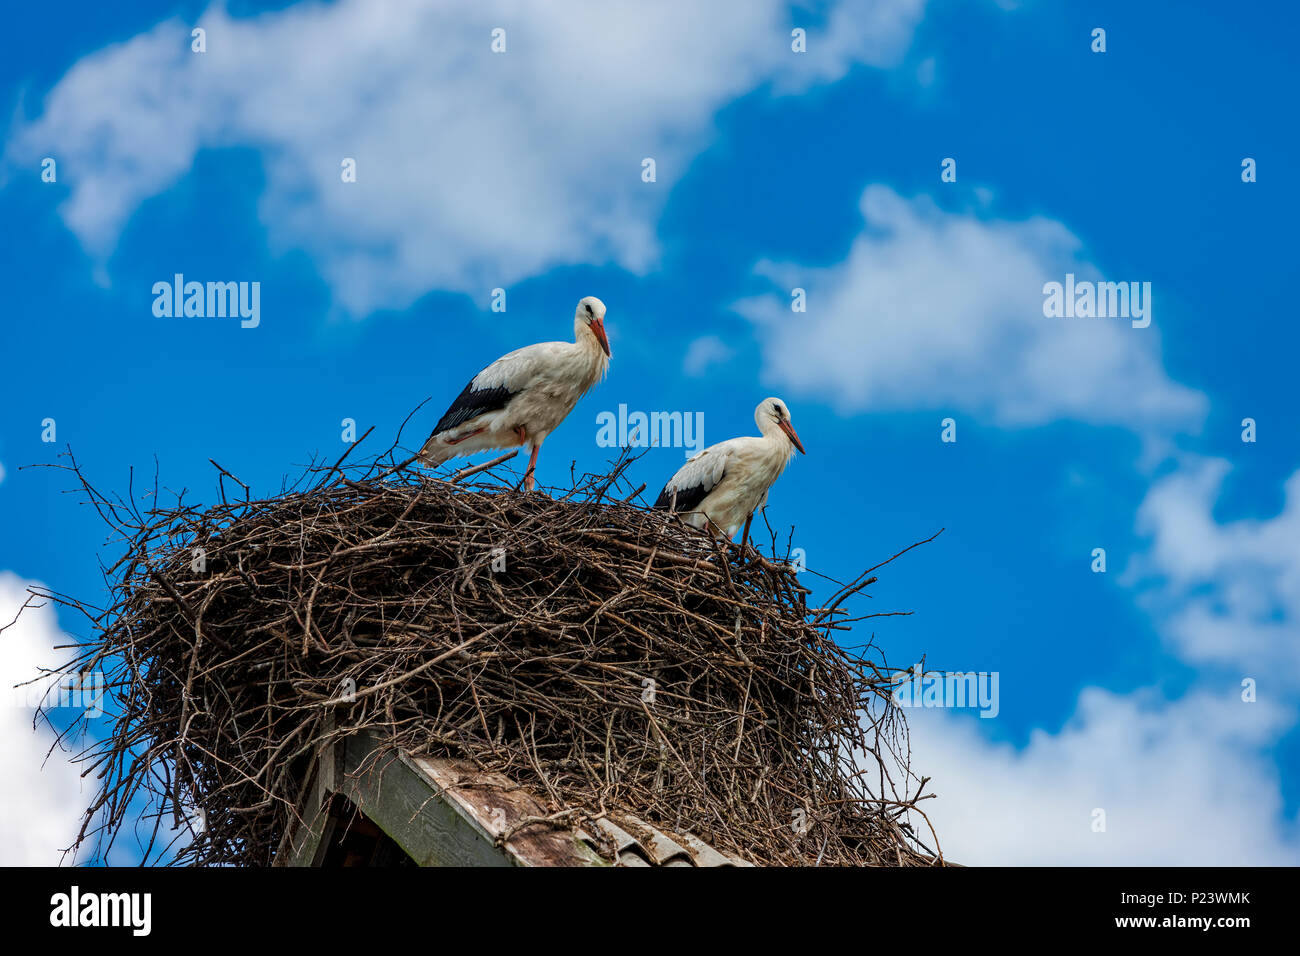 Cicogne sedersi nel nido sul tetto in estate, Regione di Tver, Russia Foto Stock